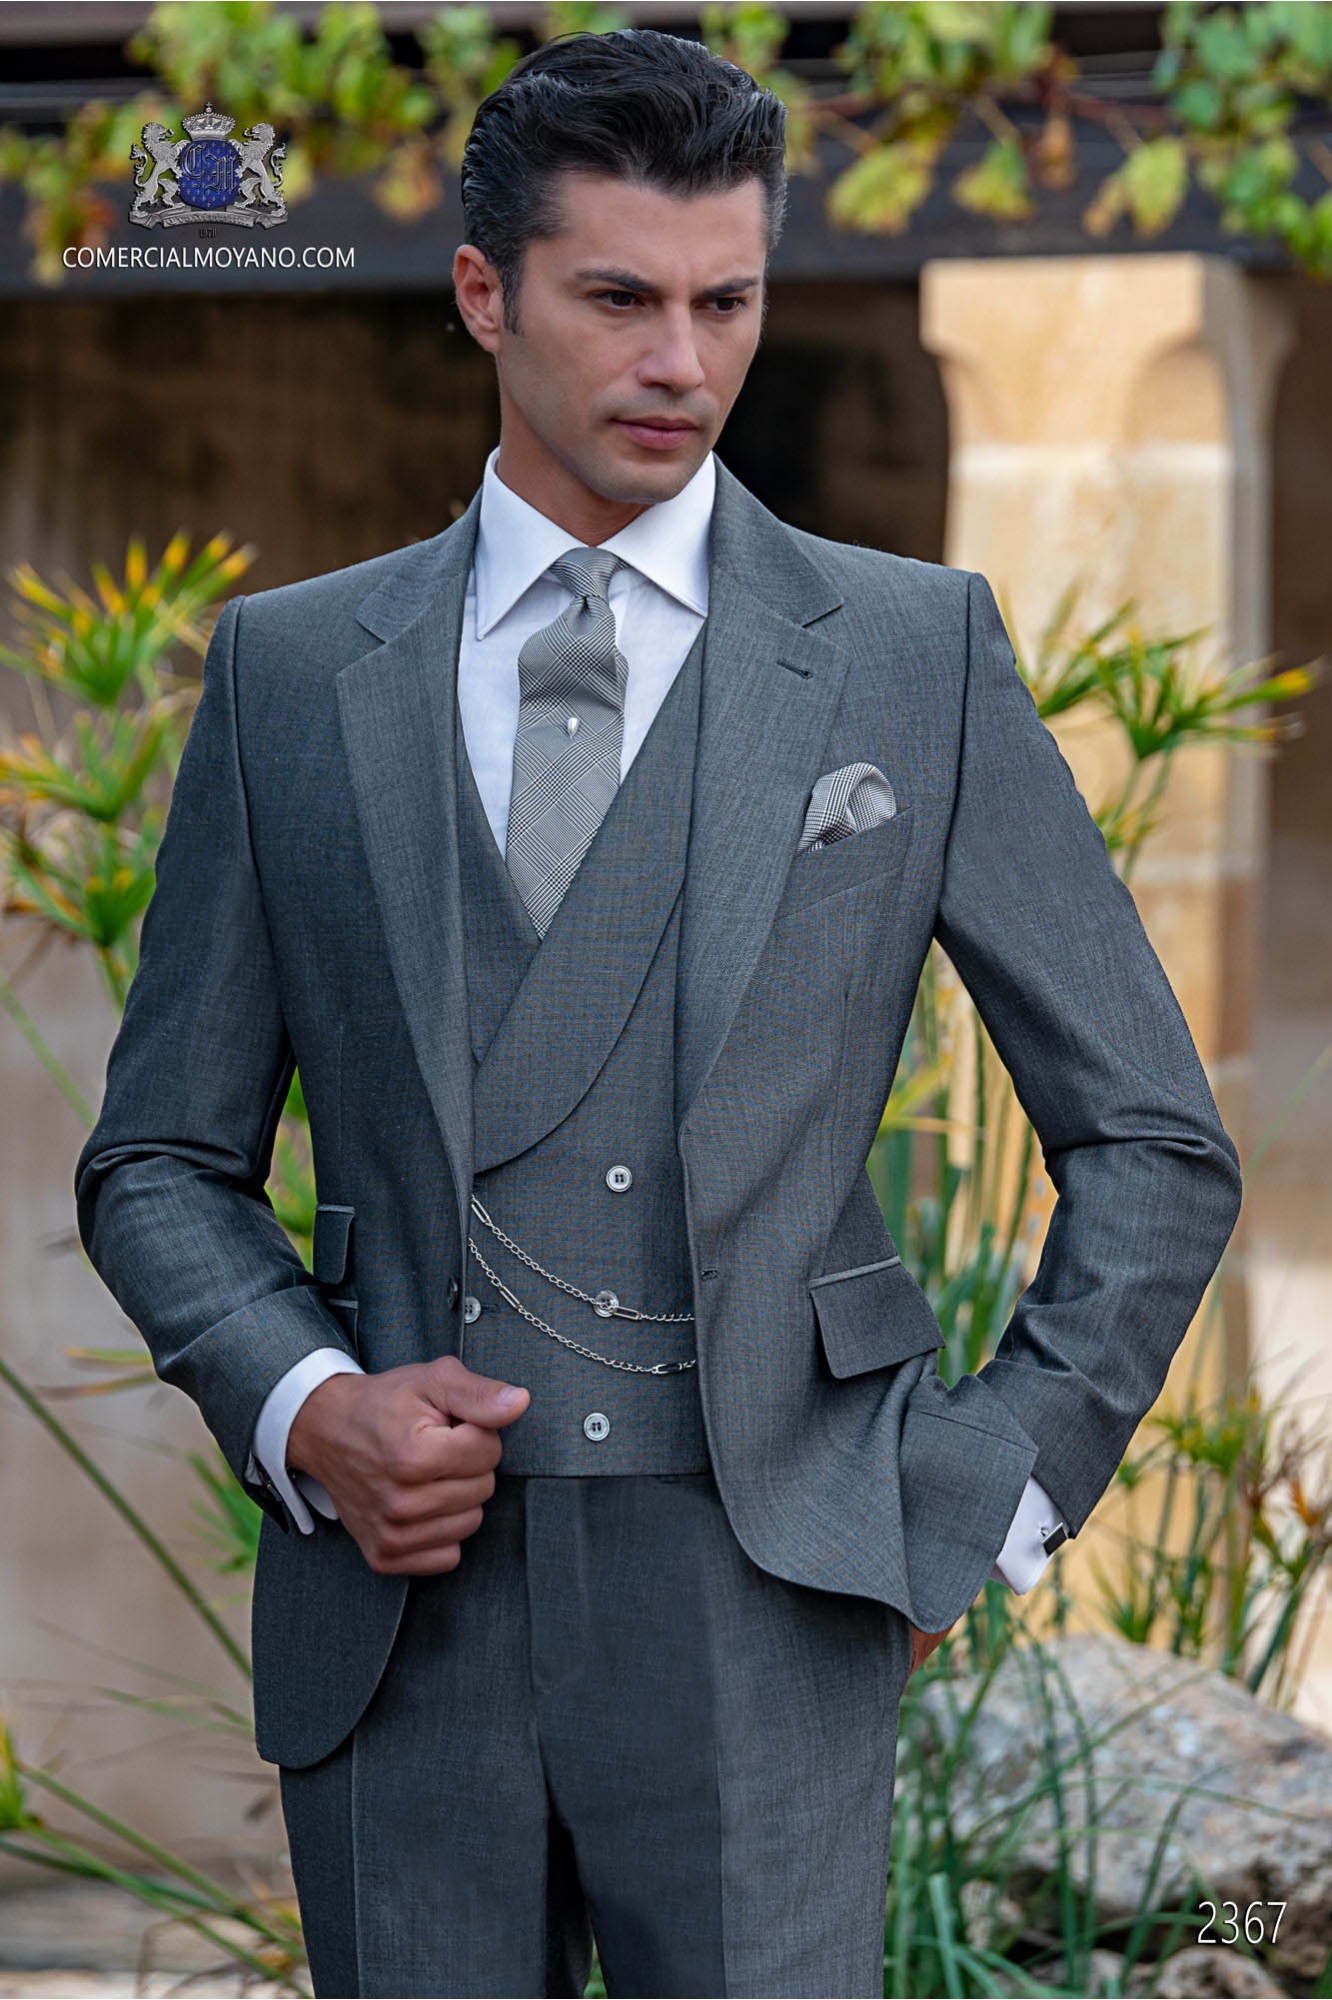 Traje gris mixto lana mohair alpaca modelo: 2367 Mario Moyano colección Gentleman